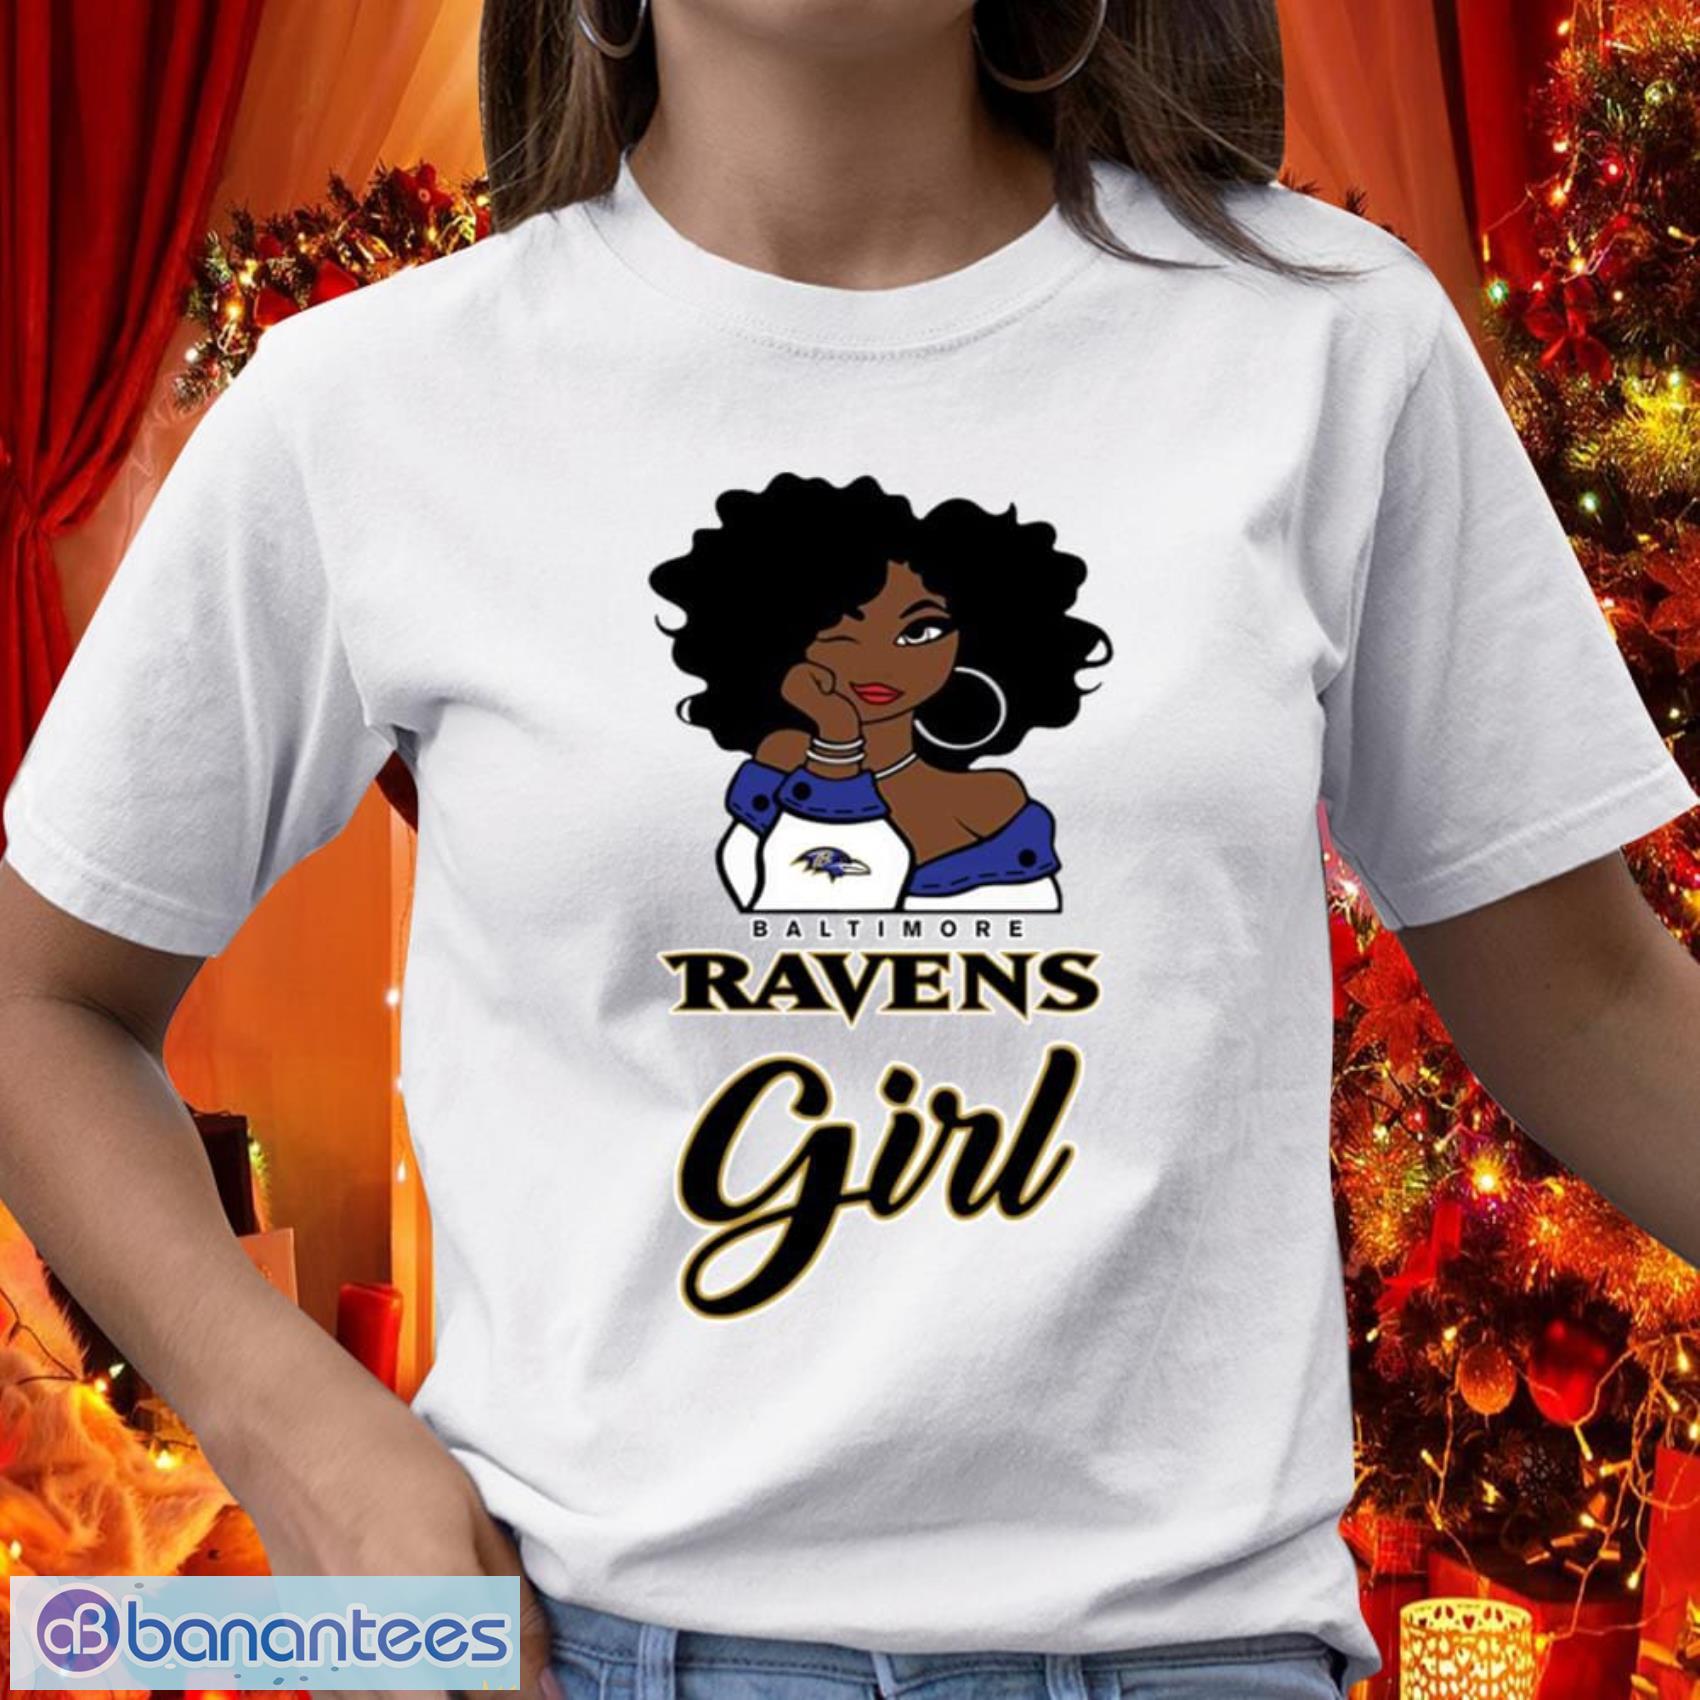 Baltimore Ravens Girl NFL T Shirt - Baltimore Ravens Girl NFL T Shirt_1